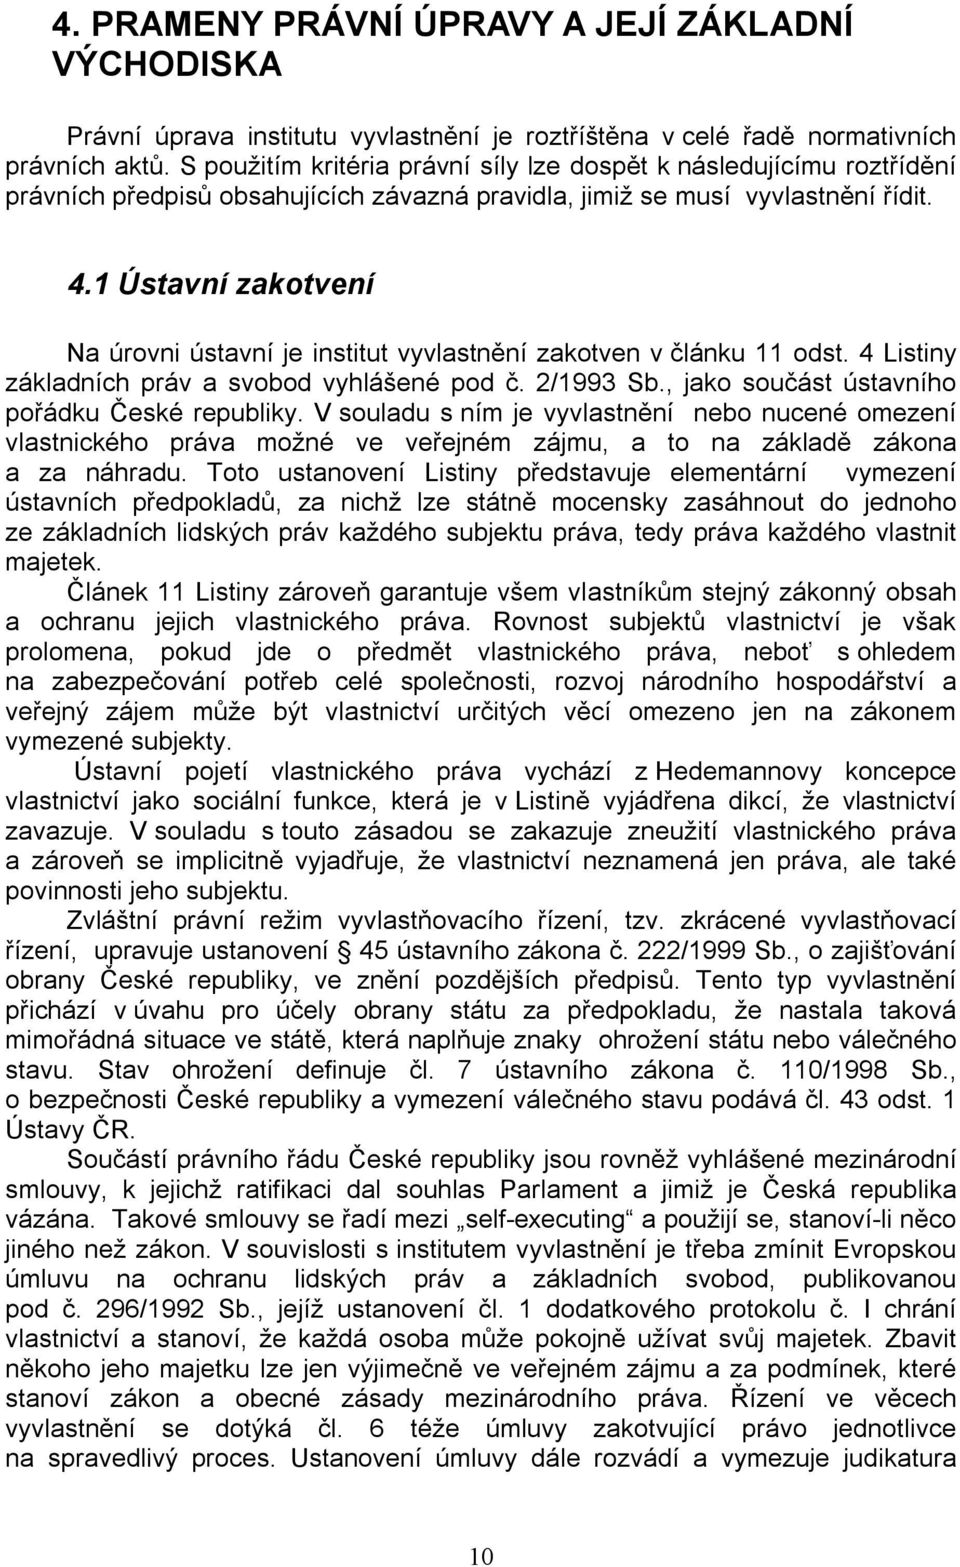 1 Ústavní zakotvení Na úrovni ústavní je institut vyvlastnění zakotven v článku 11 odst. 4 Listiny základních práv a svobod vyhlášené pod č. 2/1993 Sb., jako součást ústavního pořádku České republiky.